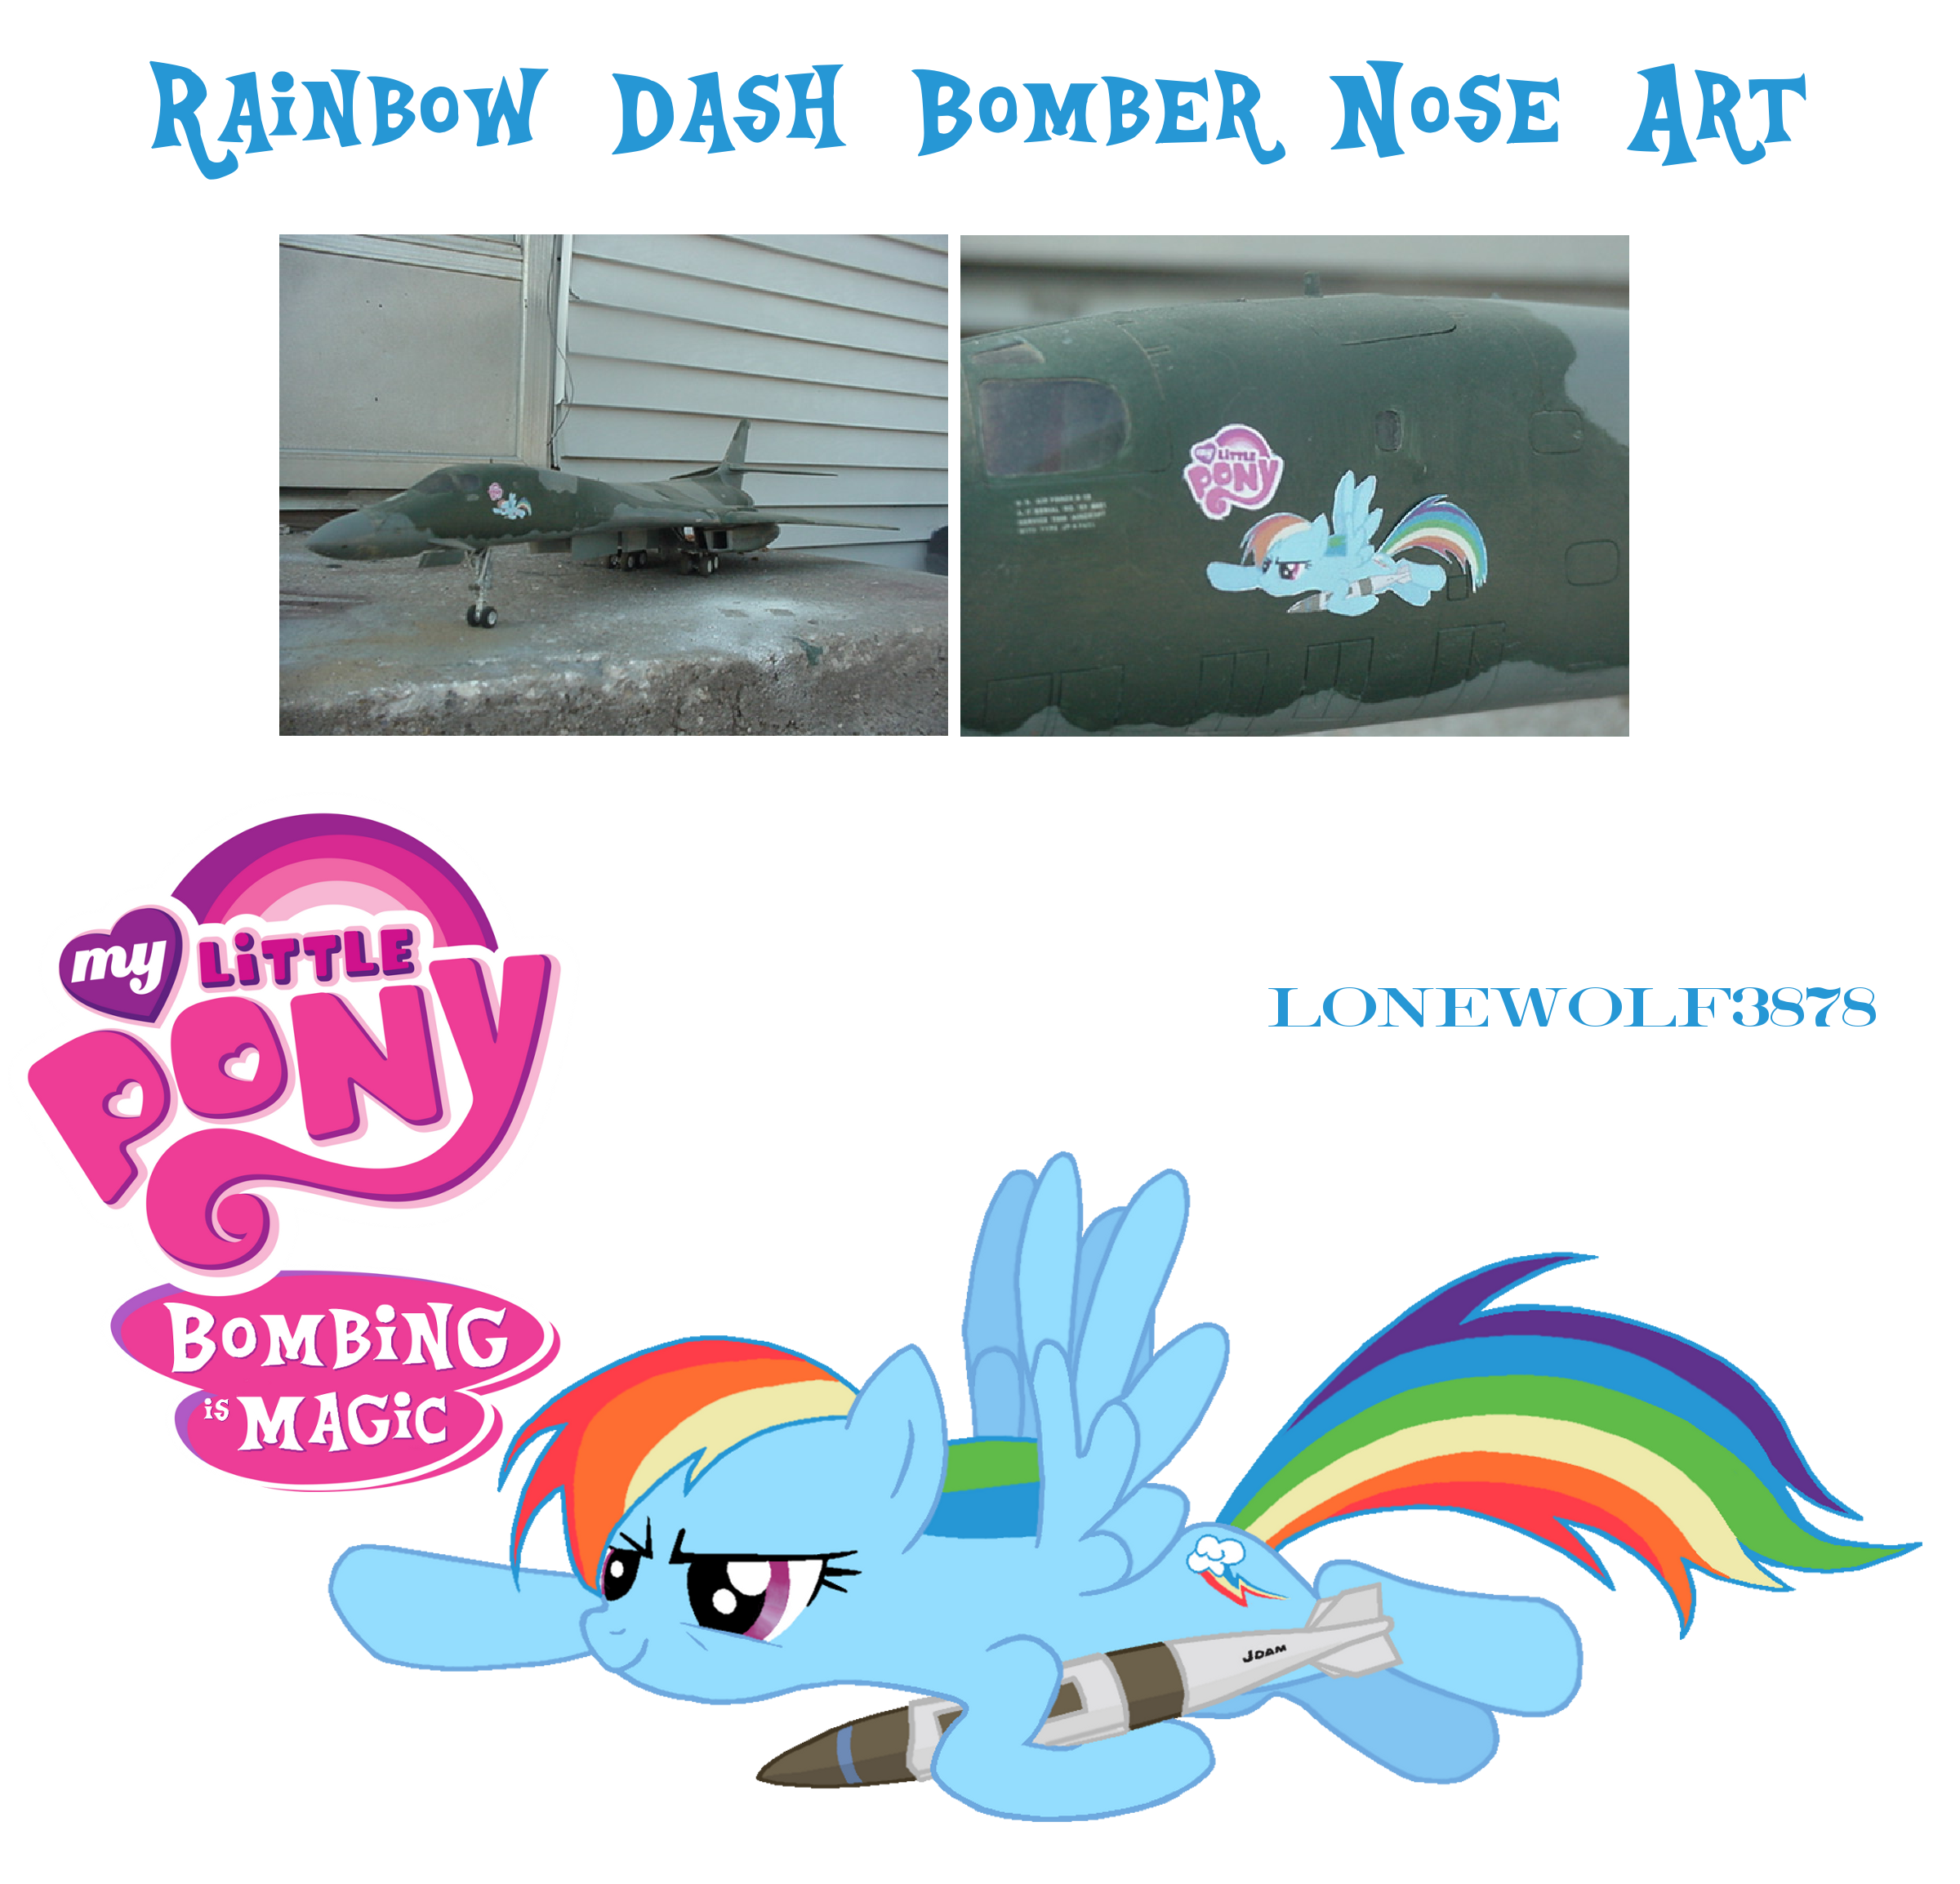 Pony текст. Текст про пони. My little Pony слова. Little Pony реклама. Листовки реклама для пони фото.